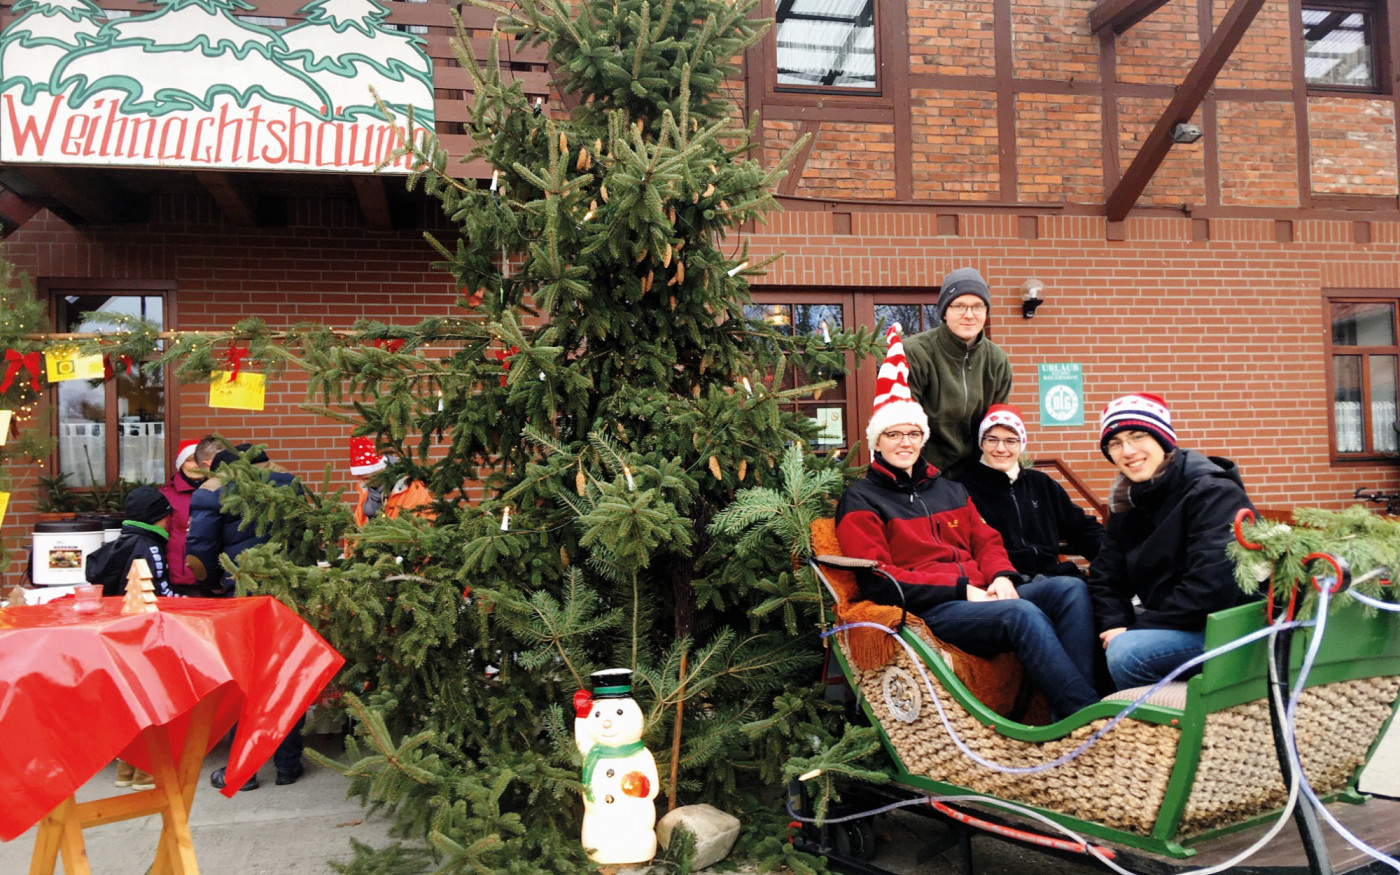 Weihnachtsbäume gibt‘s hier seit 30 Jahren: Familie Müller verkauft auf dem Hof - und liefert die Festtagstanne bei Bedarf